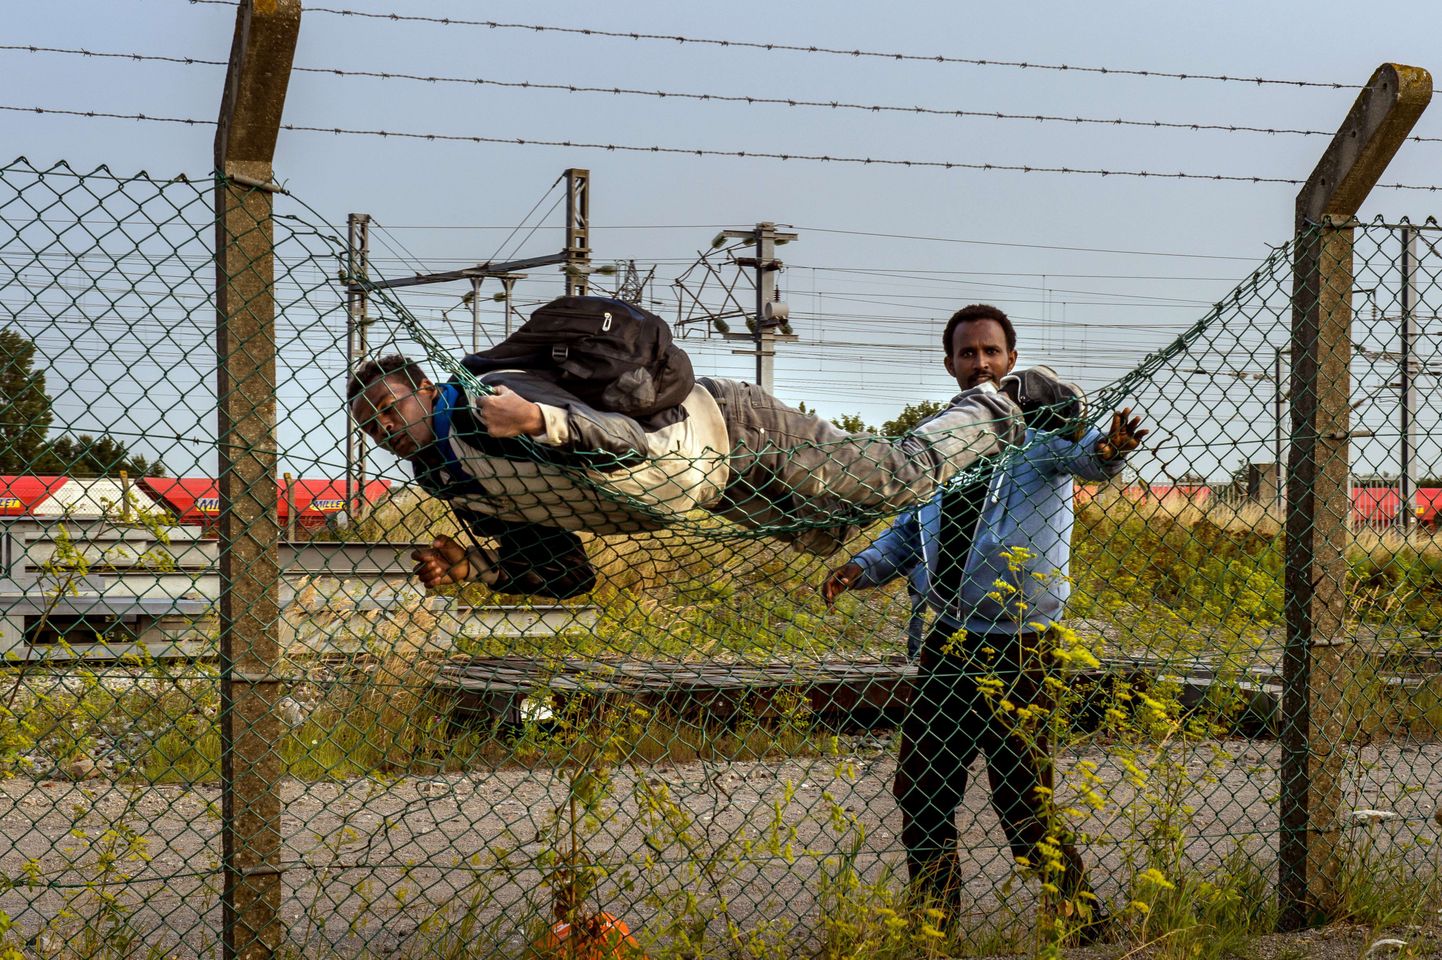 Immigrandid ületamas ebaseaduslikult aeda Calais, pääsemaks Eurotunnelisse.